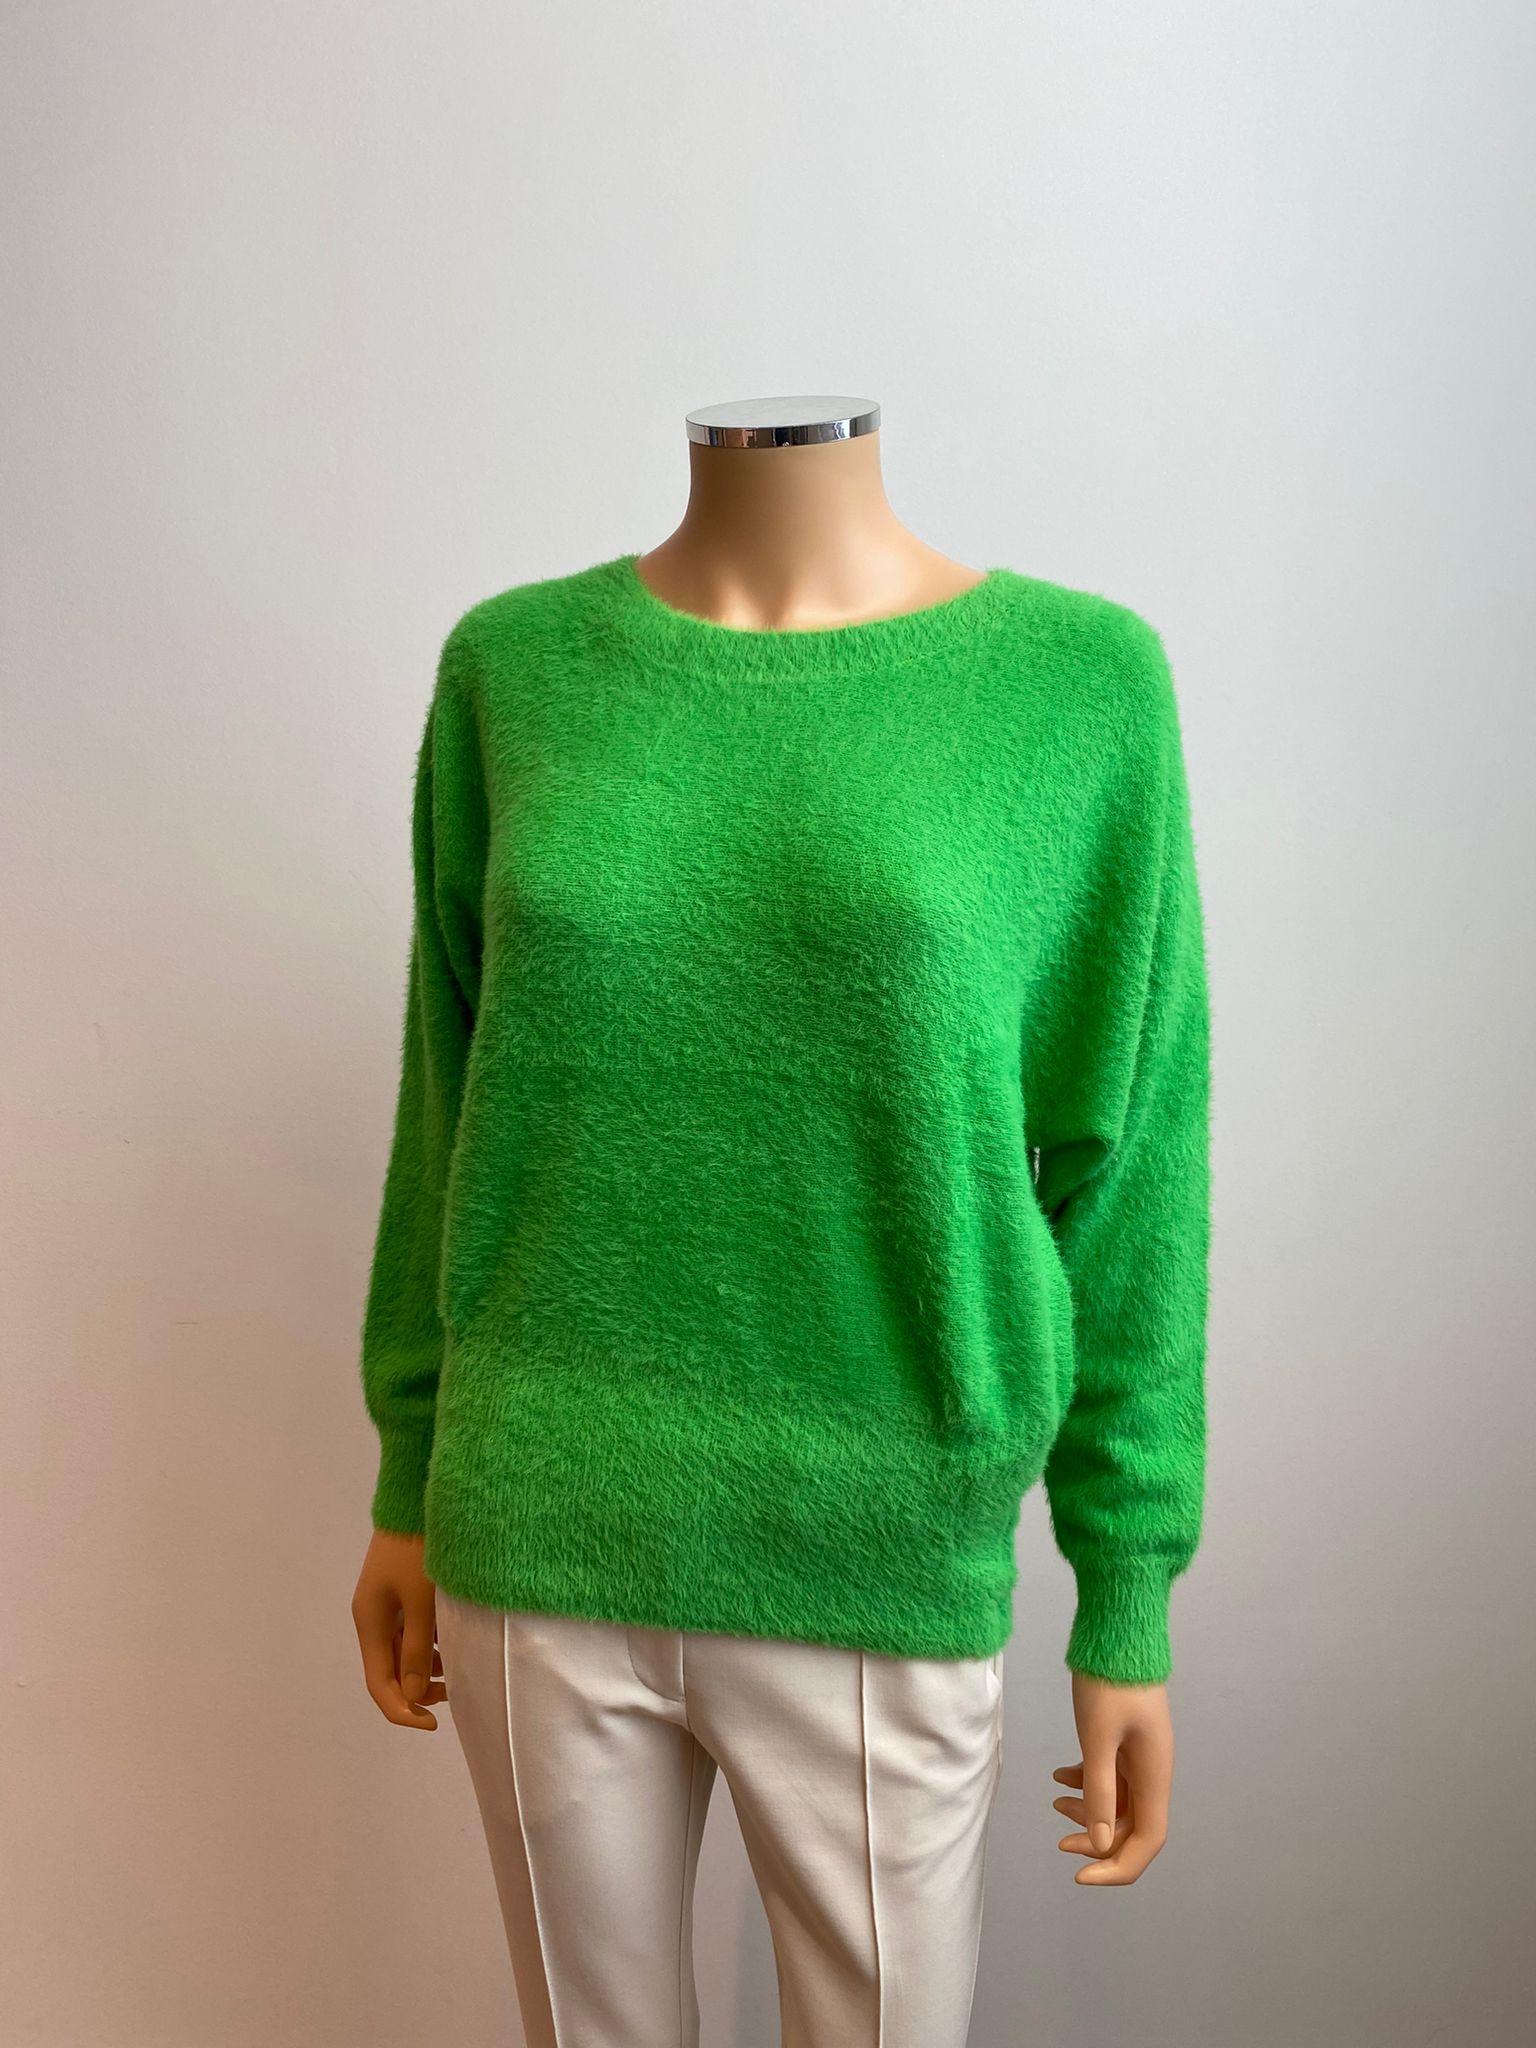 Pull Groen Senso ( 9324 Ethel Green ) - Delaere Womenswear